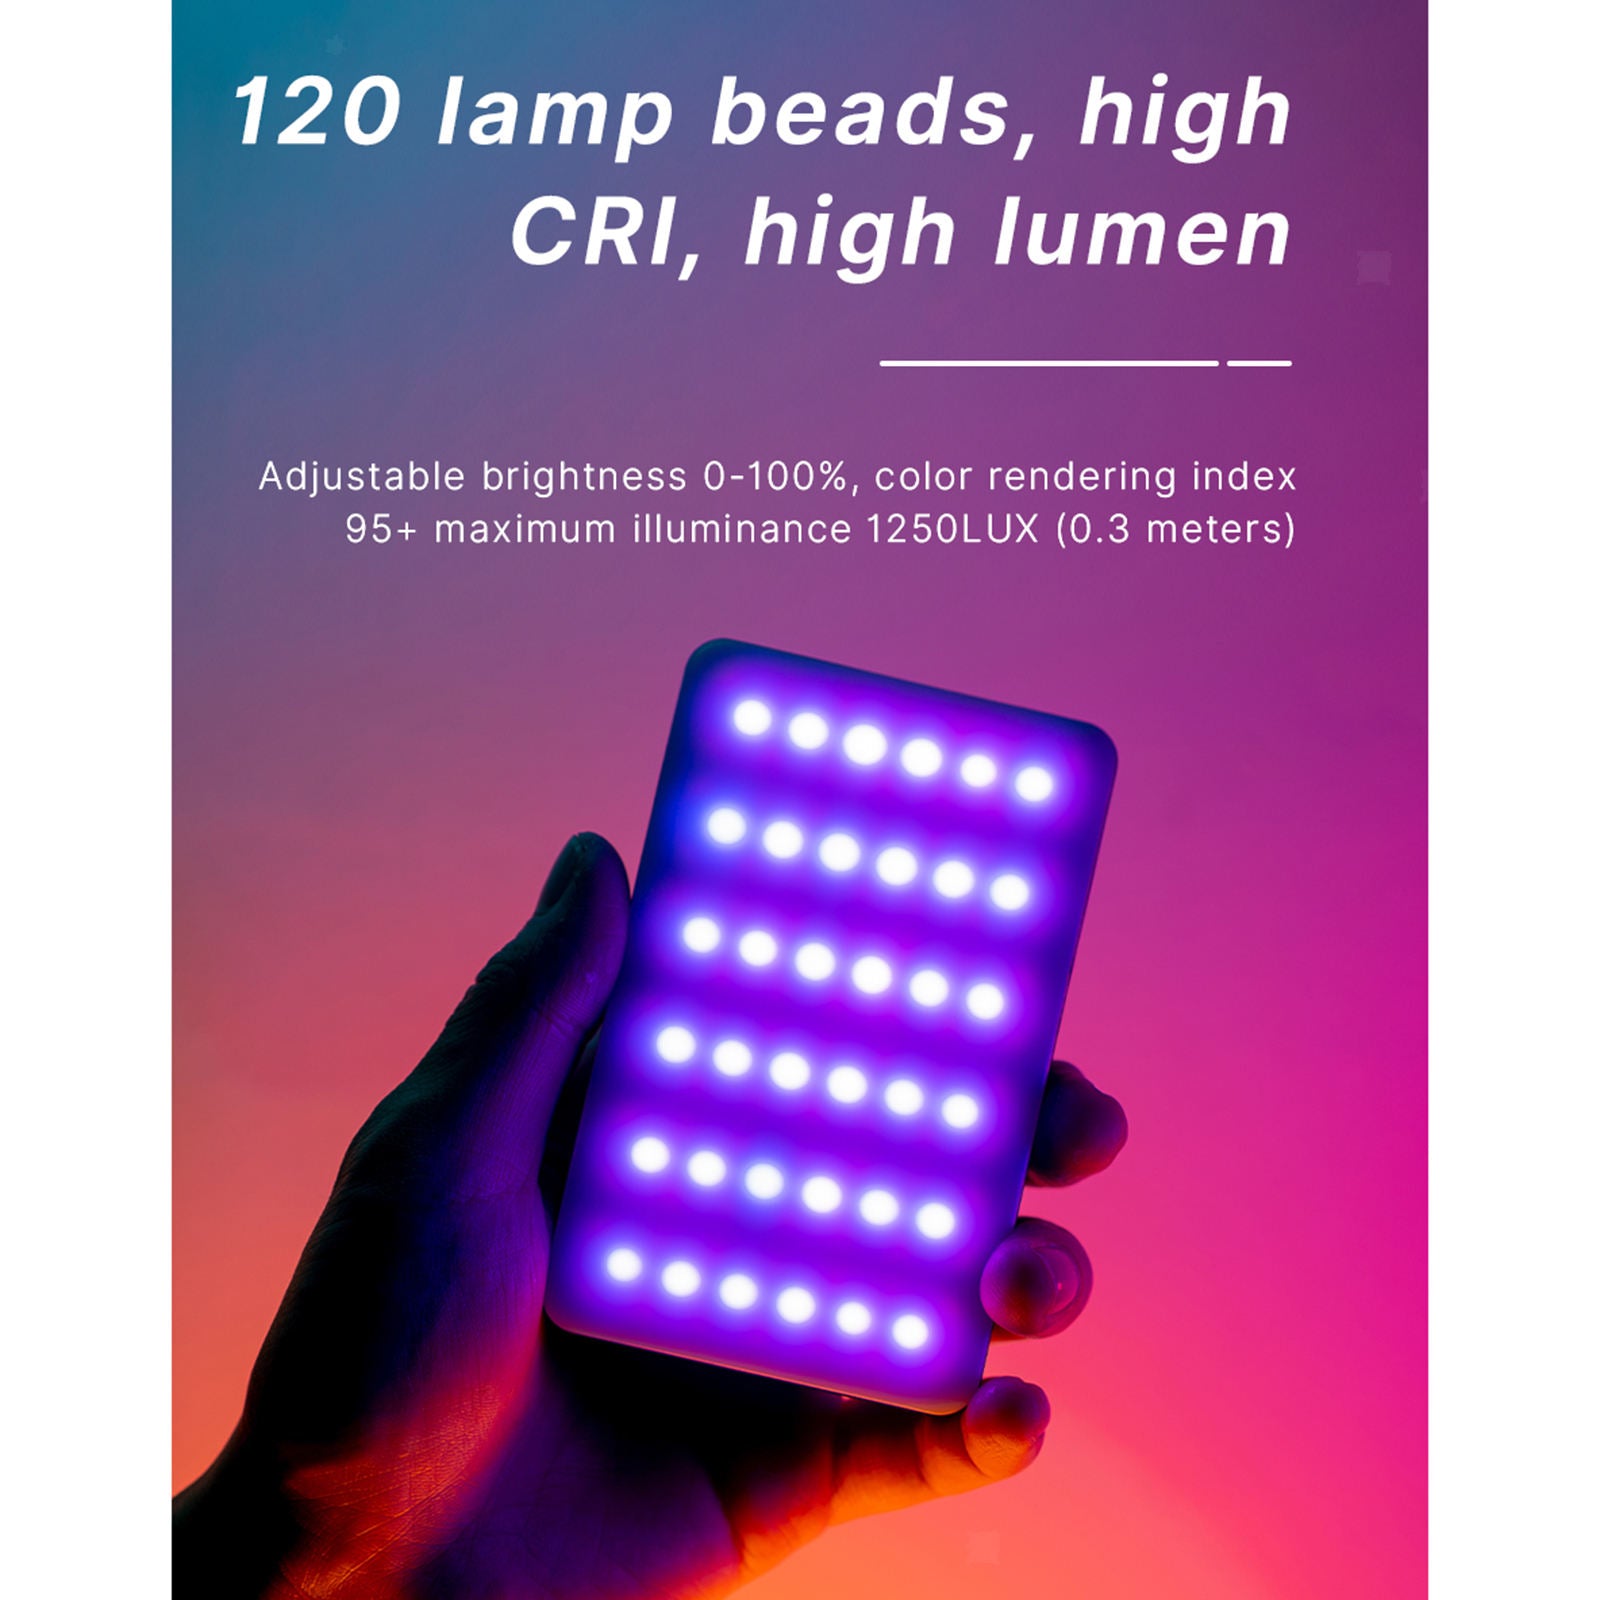 2500-9000K Dimmable Mini LED Video Light SLR Fill Light for Photography